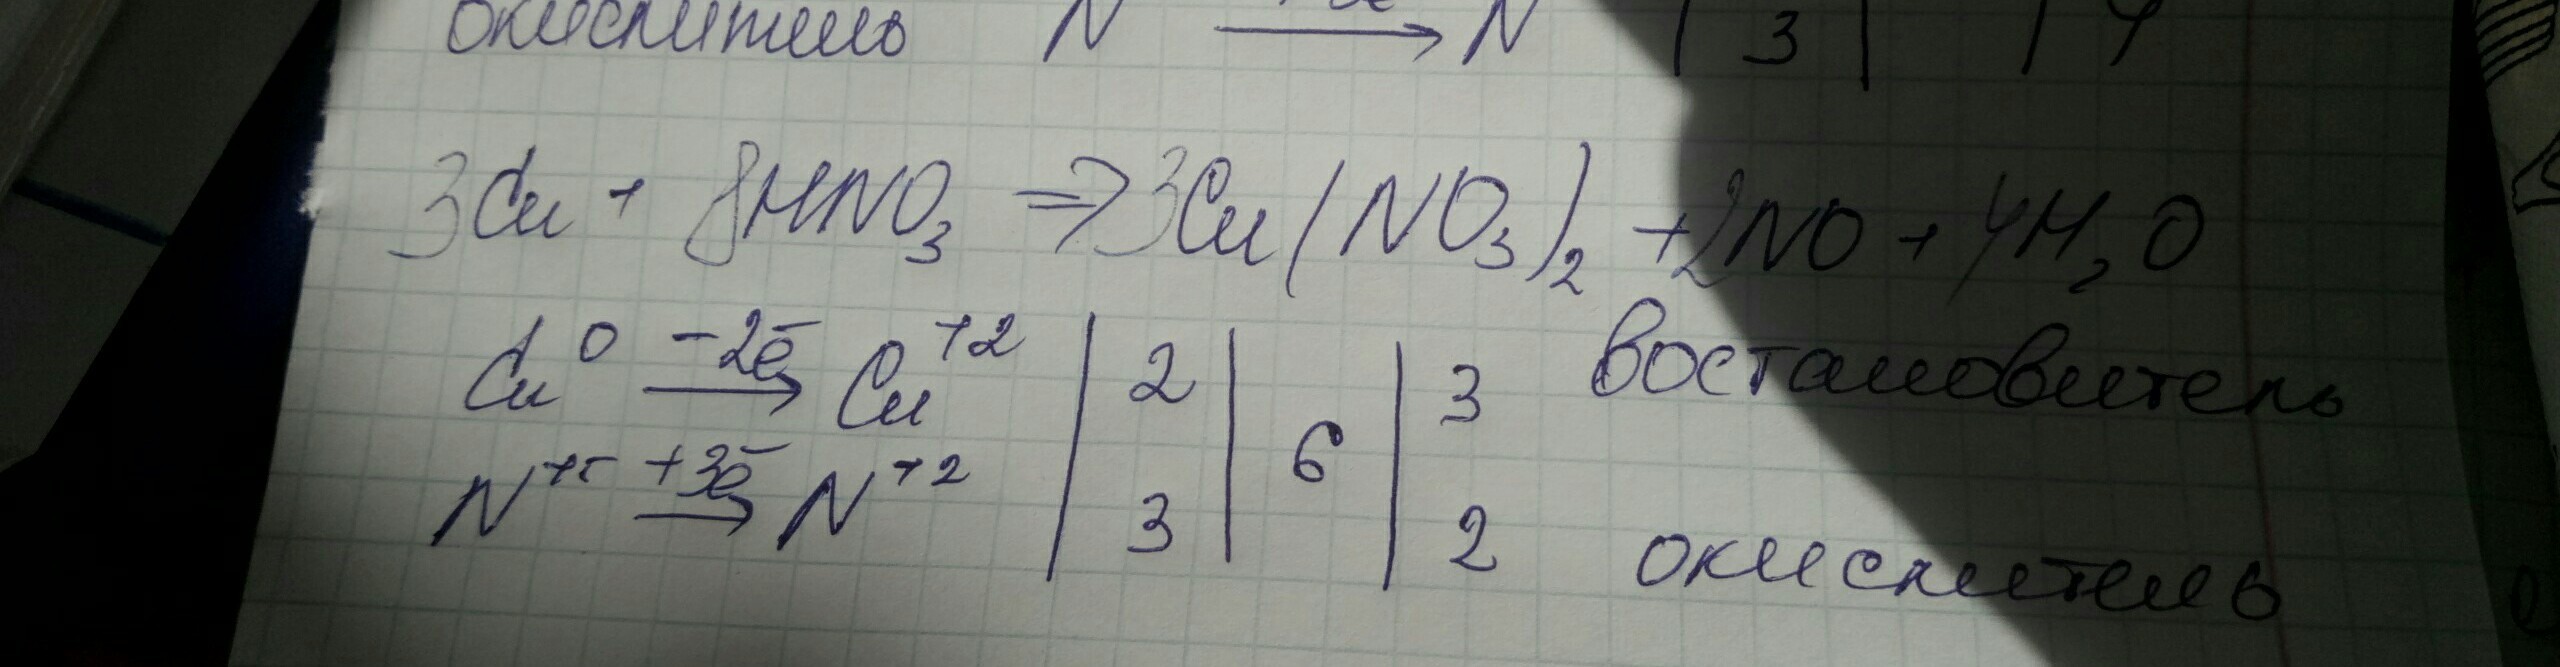 Cu no3 2 ki. Cu+hno3 метод полуреакций. No3 no2 полуреакция. Cu hno3 cu no3 2 no2 h2o метод полуреакций. No2 no3 метод полуреакций.